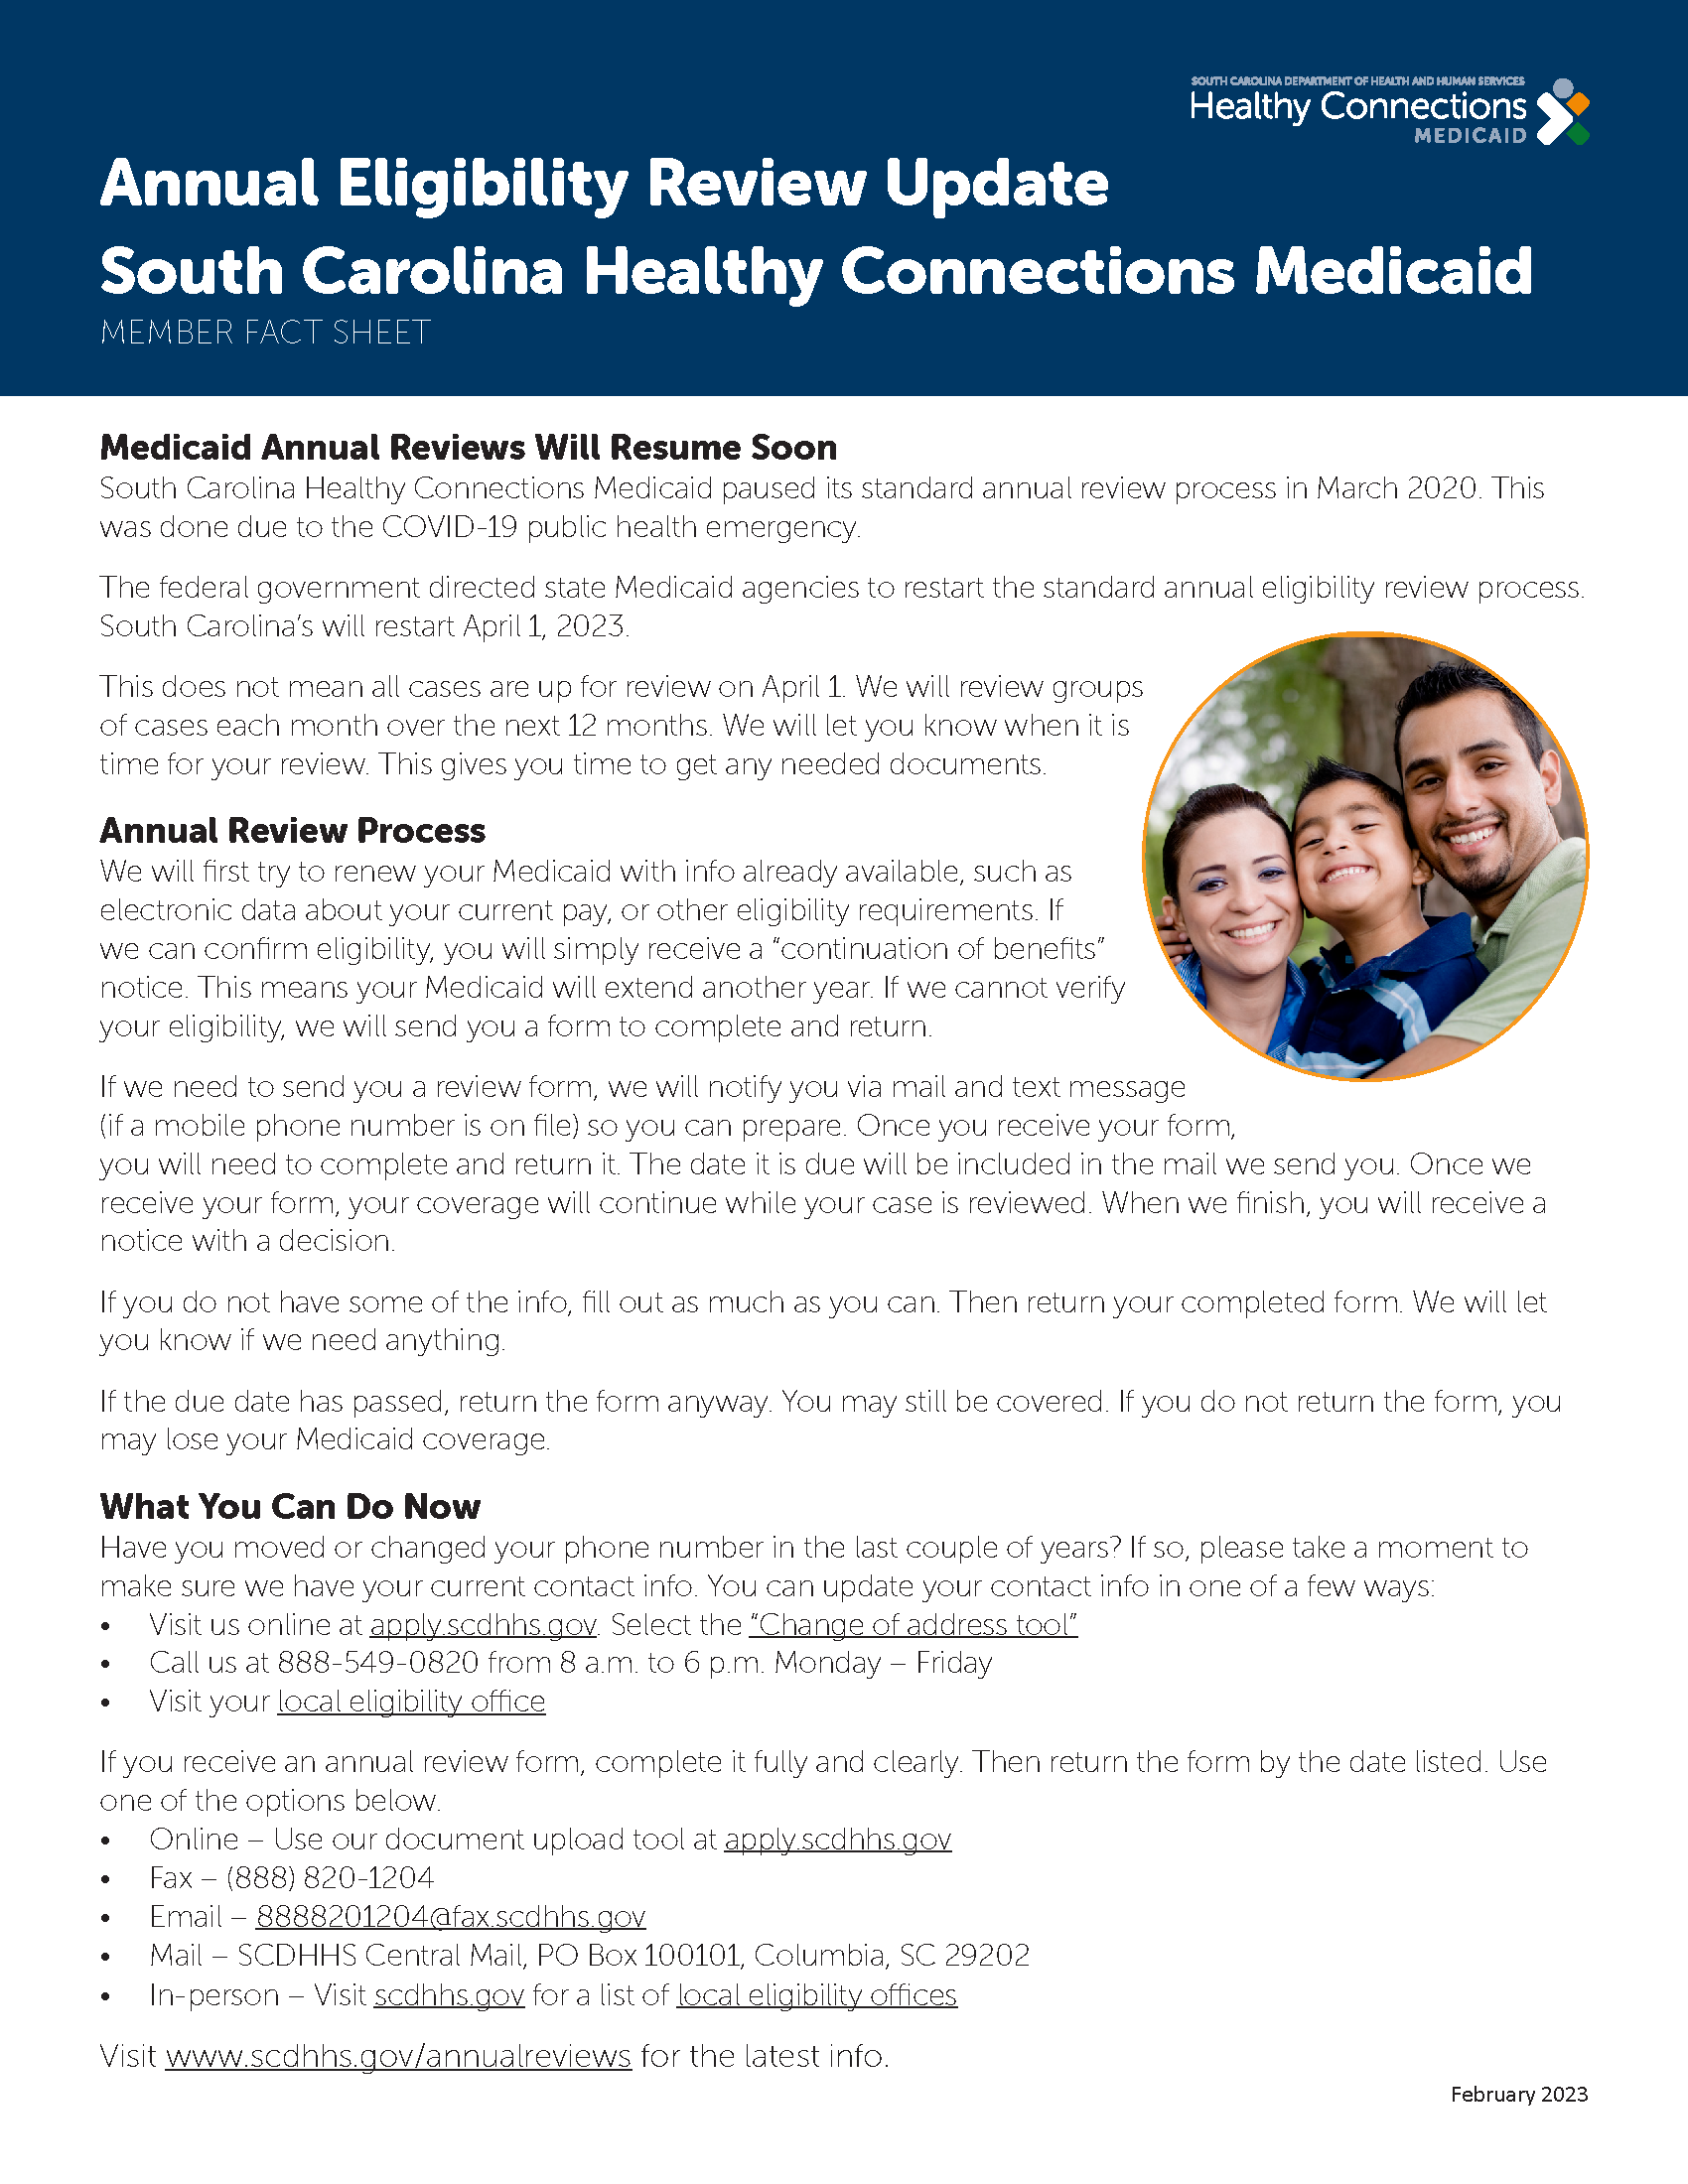 Medicaid Renewal information. Image links to PDF Version